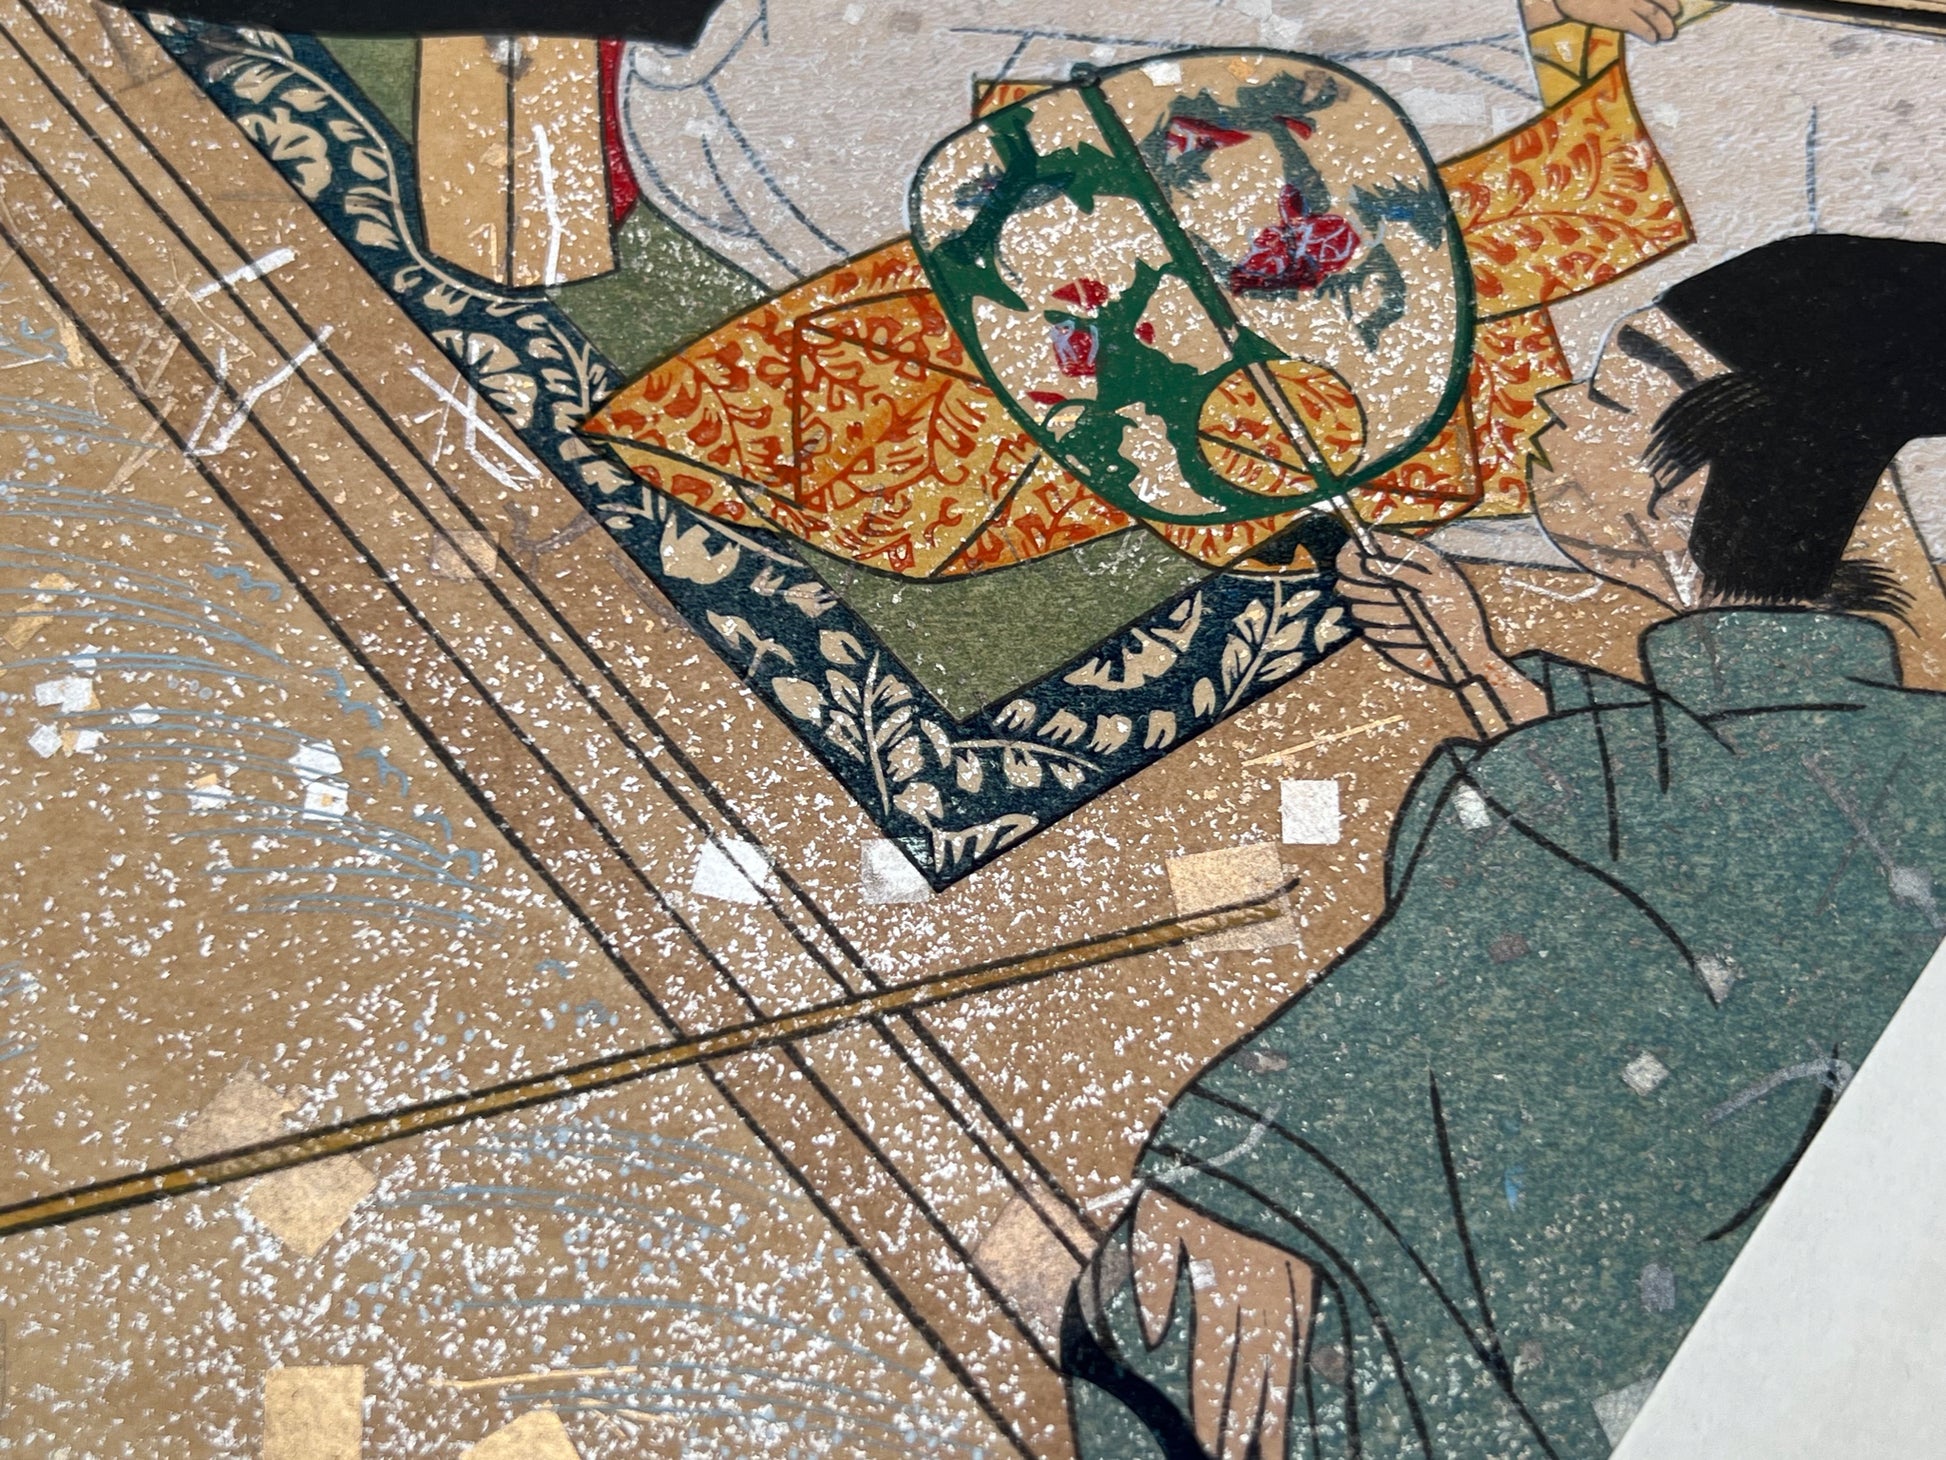 Estampe japonaise en forme d'éventail parsemée de fragments d'or et d'argent, gros plan serviteur éventail, terrasse en bois, fragments scintillants.